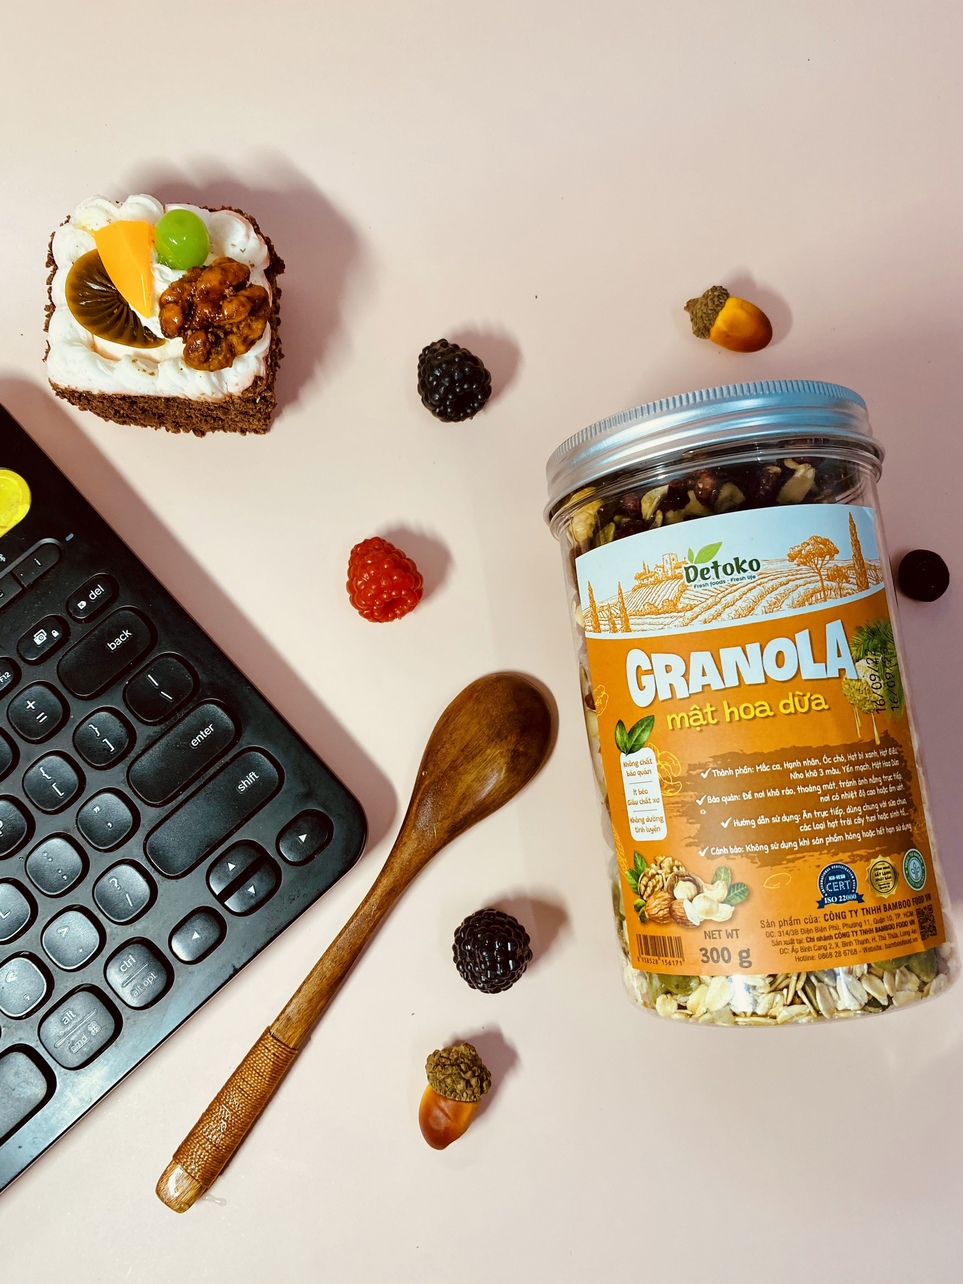 Granola mật hoa dừa siêu hạt Detoko giảm cân không đường tốt cho người ăn kiêng, bà bầu 300G